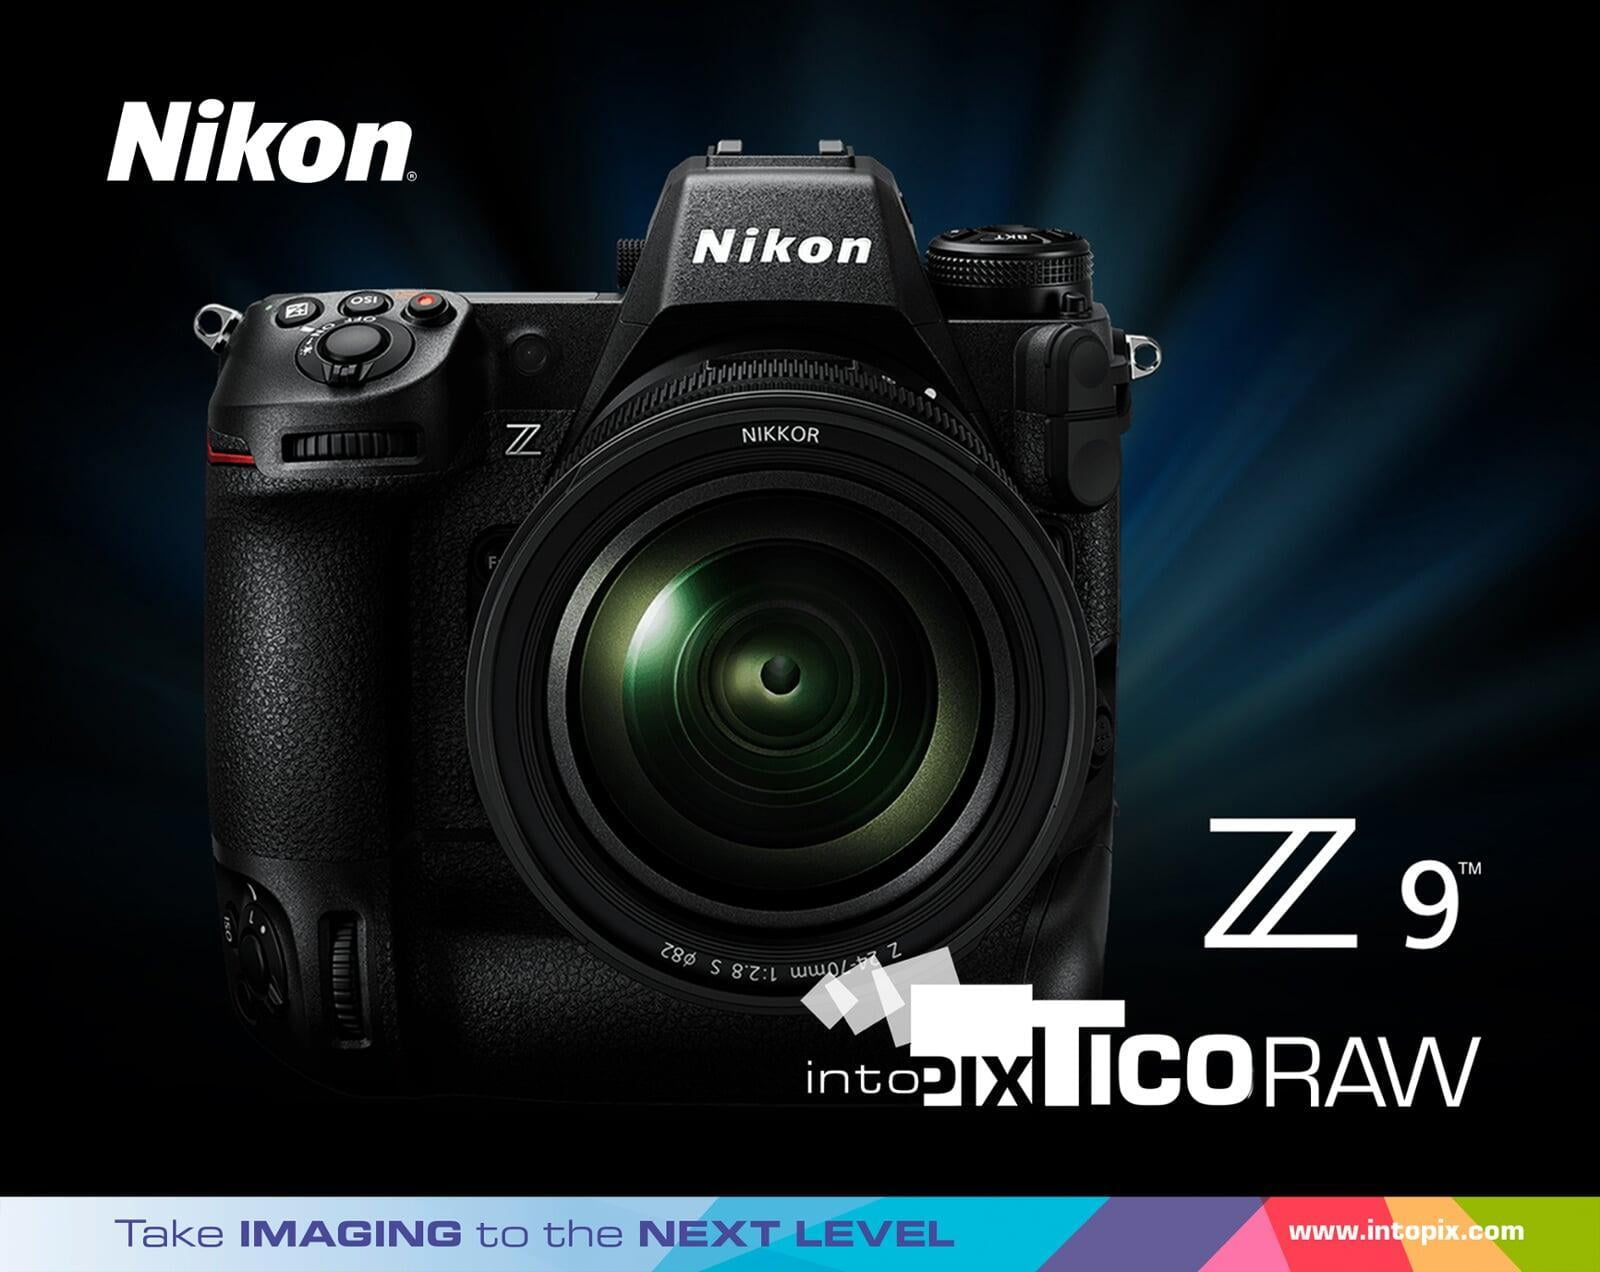 intoPIXのTicoRAW技術が、ミラーレス一眼カメラのフラッグシップモデル「Nikon Z 9」の高効率RAW録画機能に追加